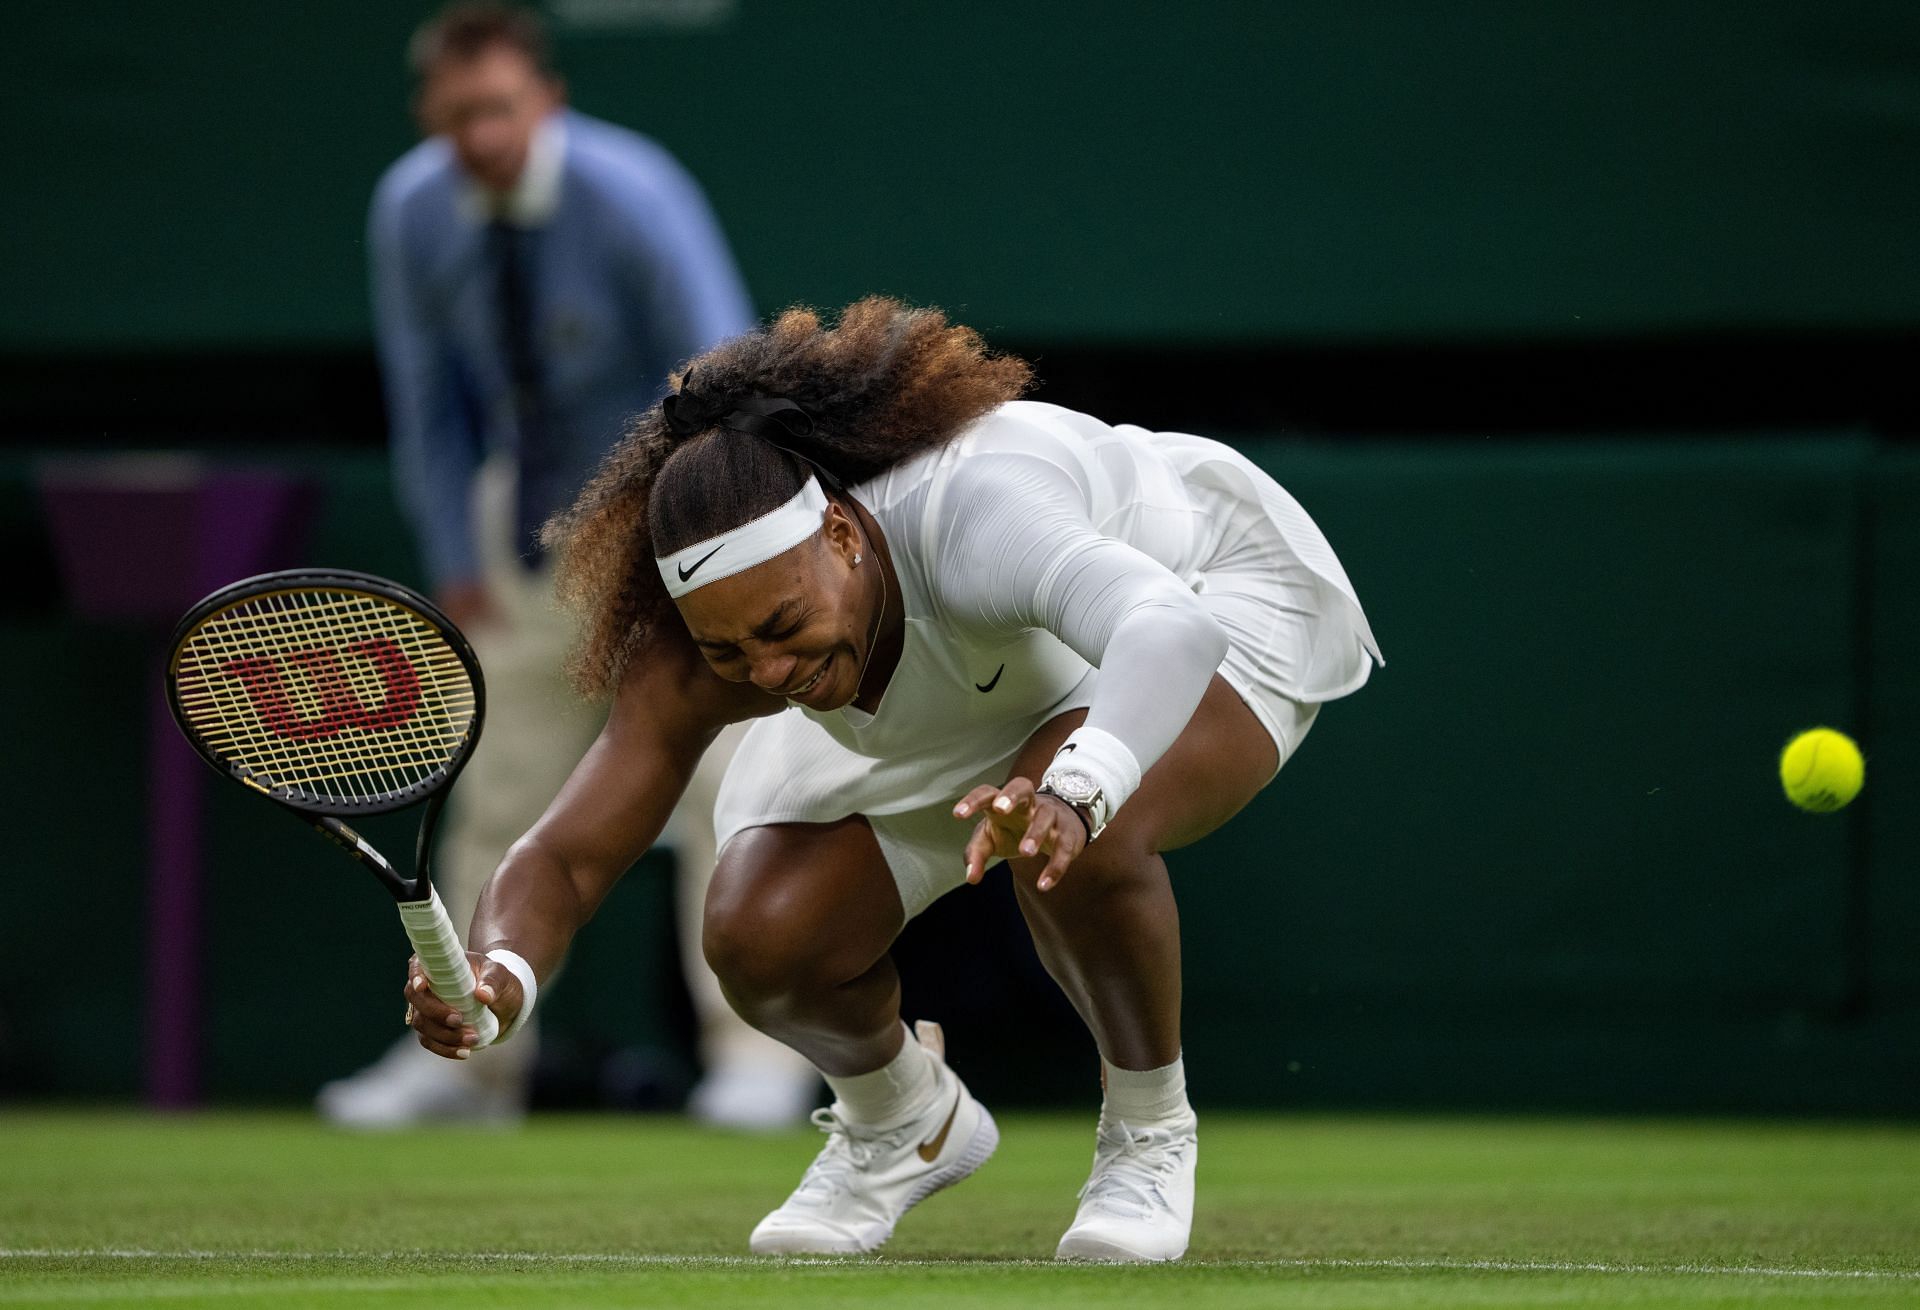 Serena Williams at the Wimbledon Championships 2021